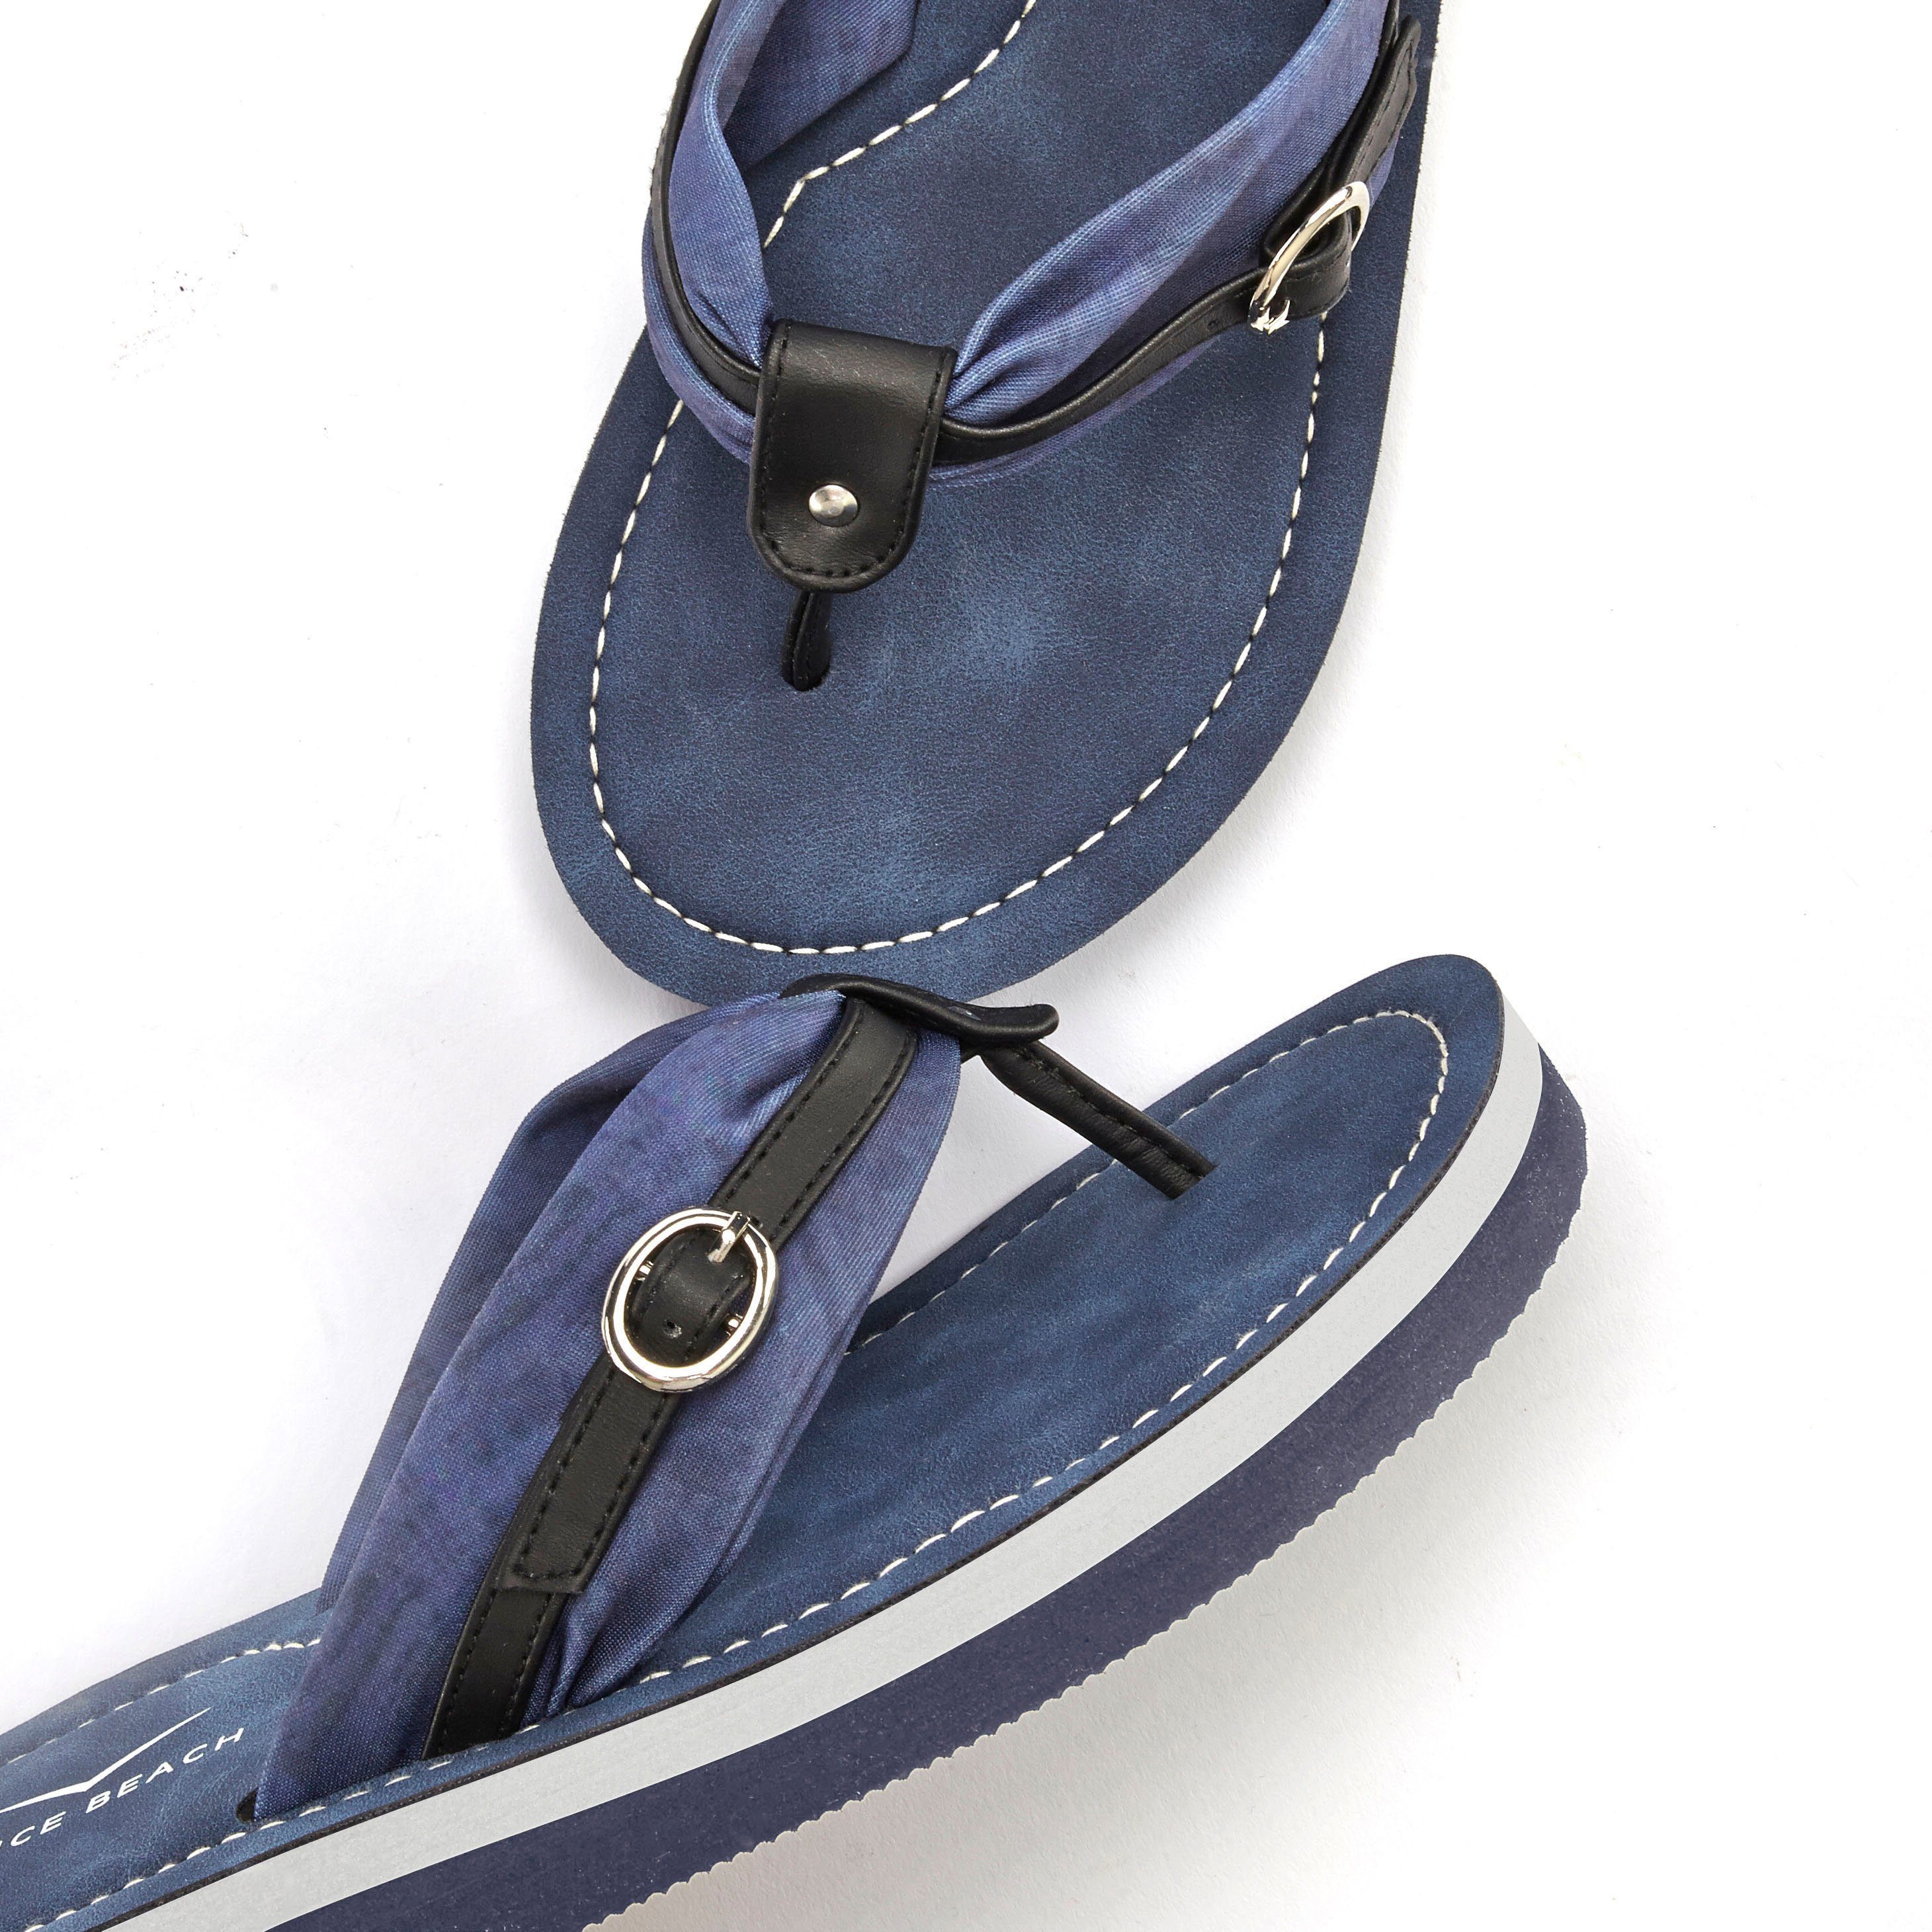 Venice Beach Badezehentrenner Pantolette, blau-schwarz Print Flop modischem VEGAN Flip Badeschuh, Sandale, mit